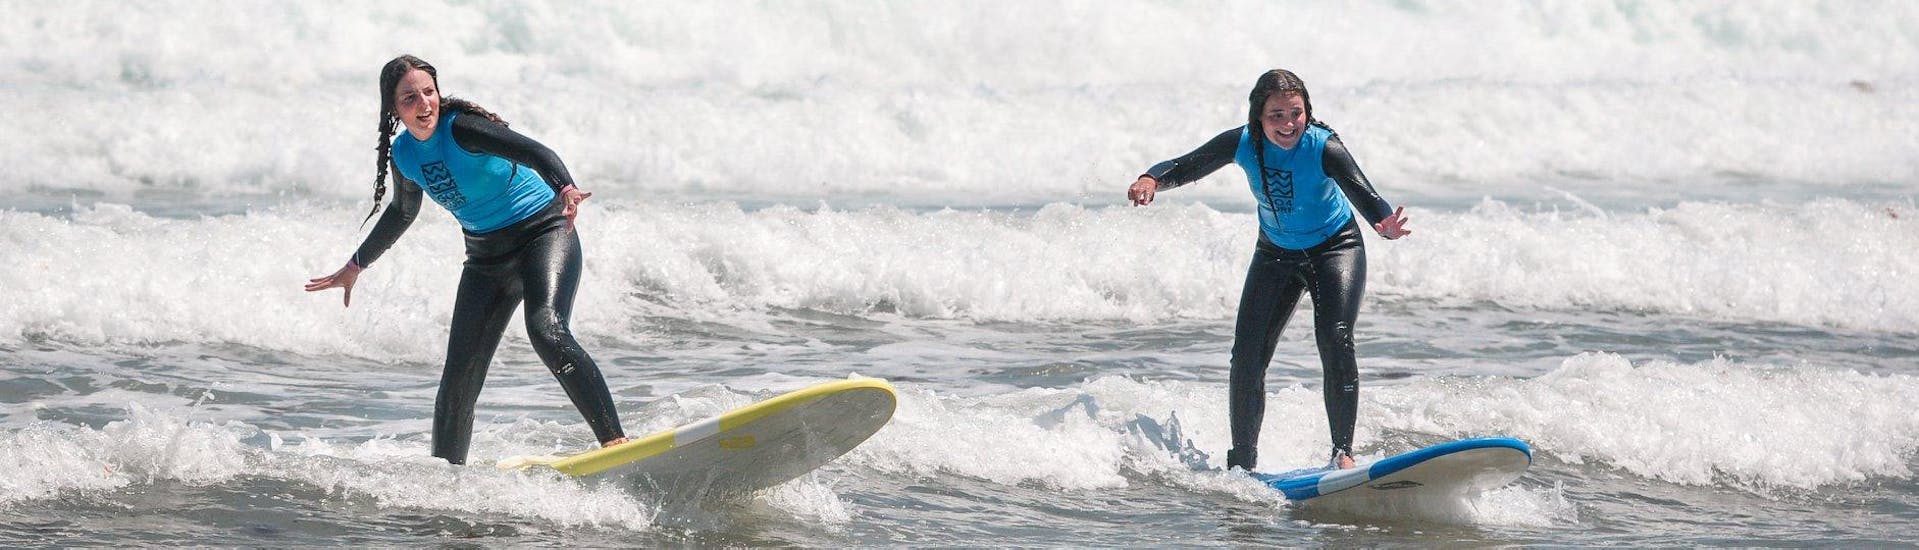 Curso de Surf en Peniche a partir de 2 años para principiantes.